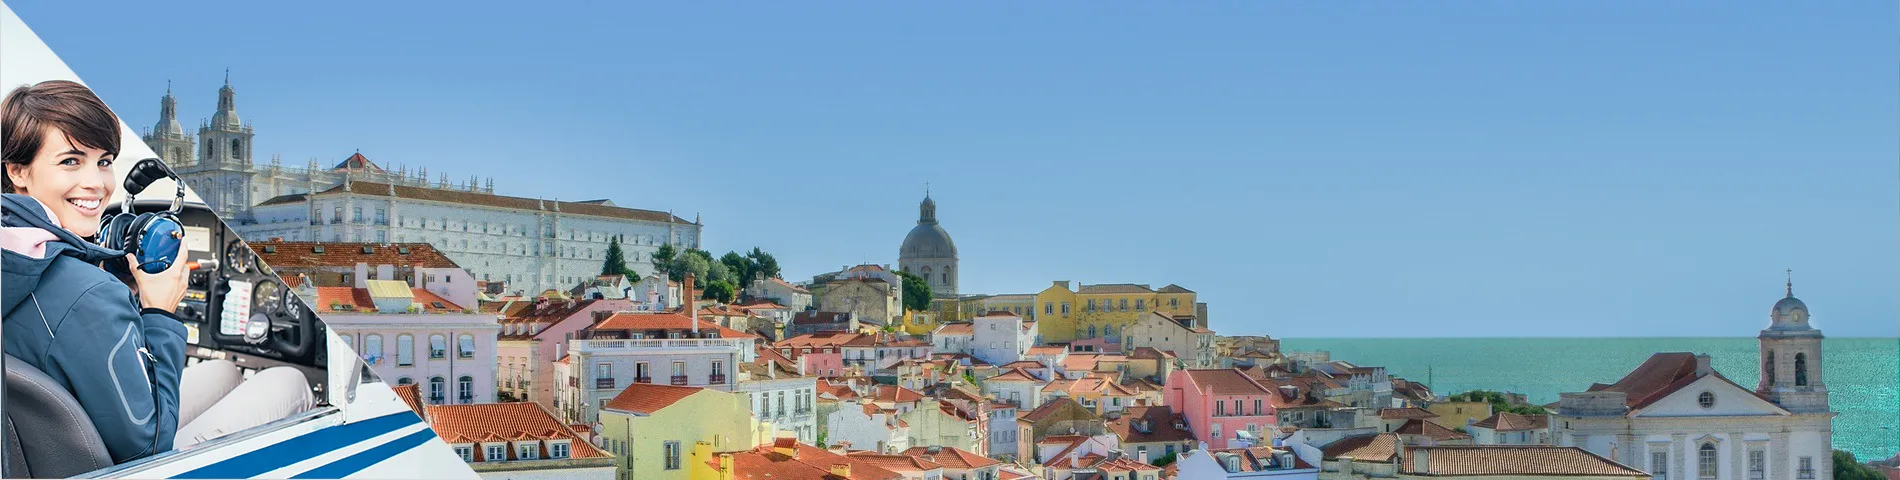 里斯本 - 葡萄牙语航空